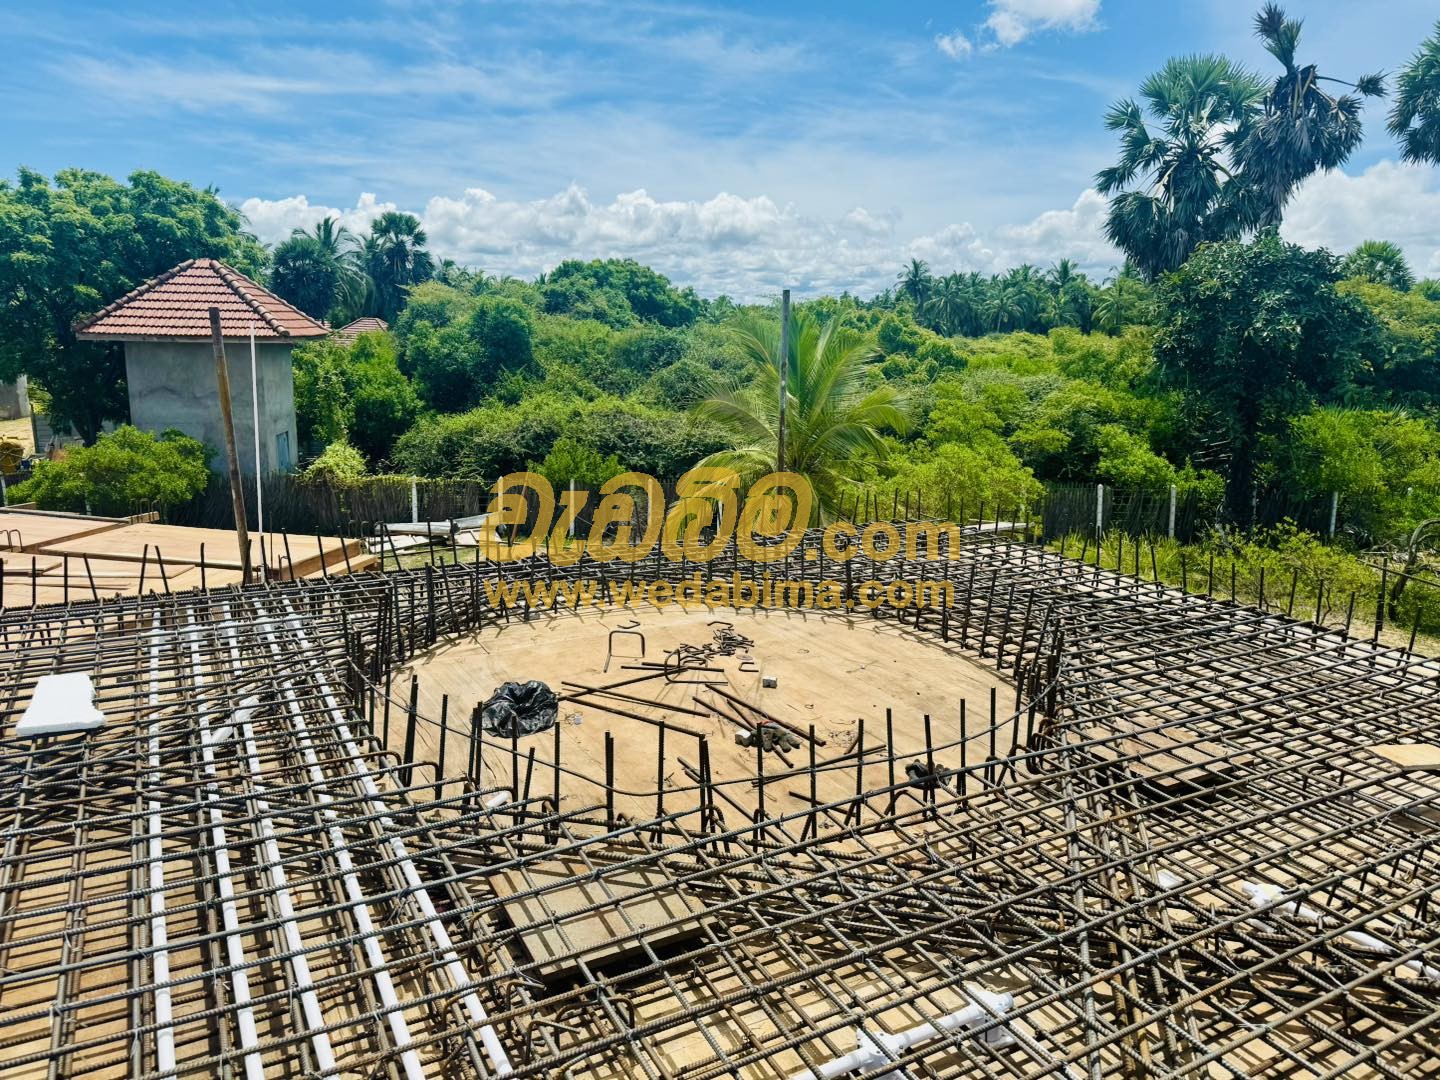 Building Construction Price in Sri Lanka